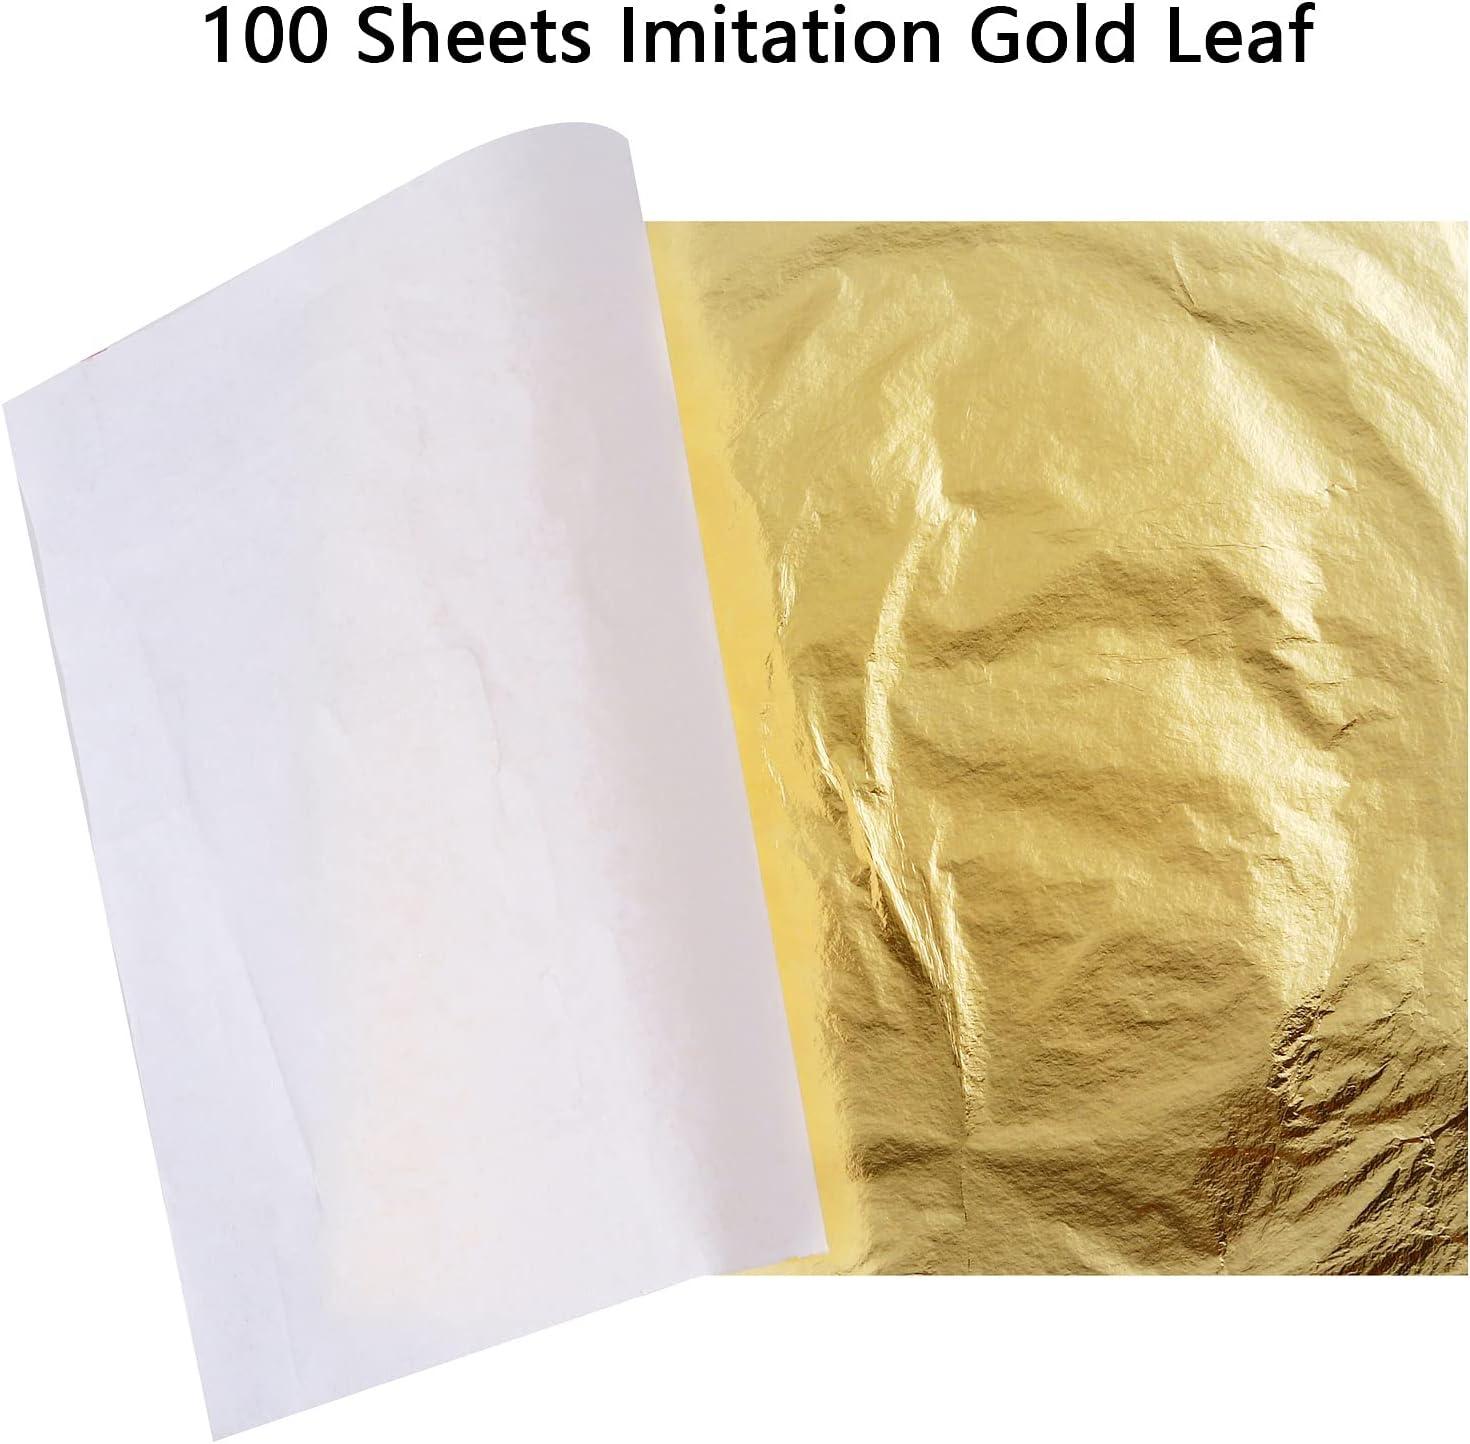 100 Sheets Imitation Gold Leaf for Arts, Gilding Crafting, Decoration,Gold  